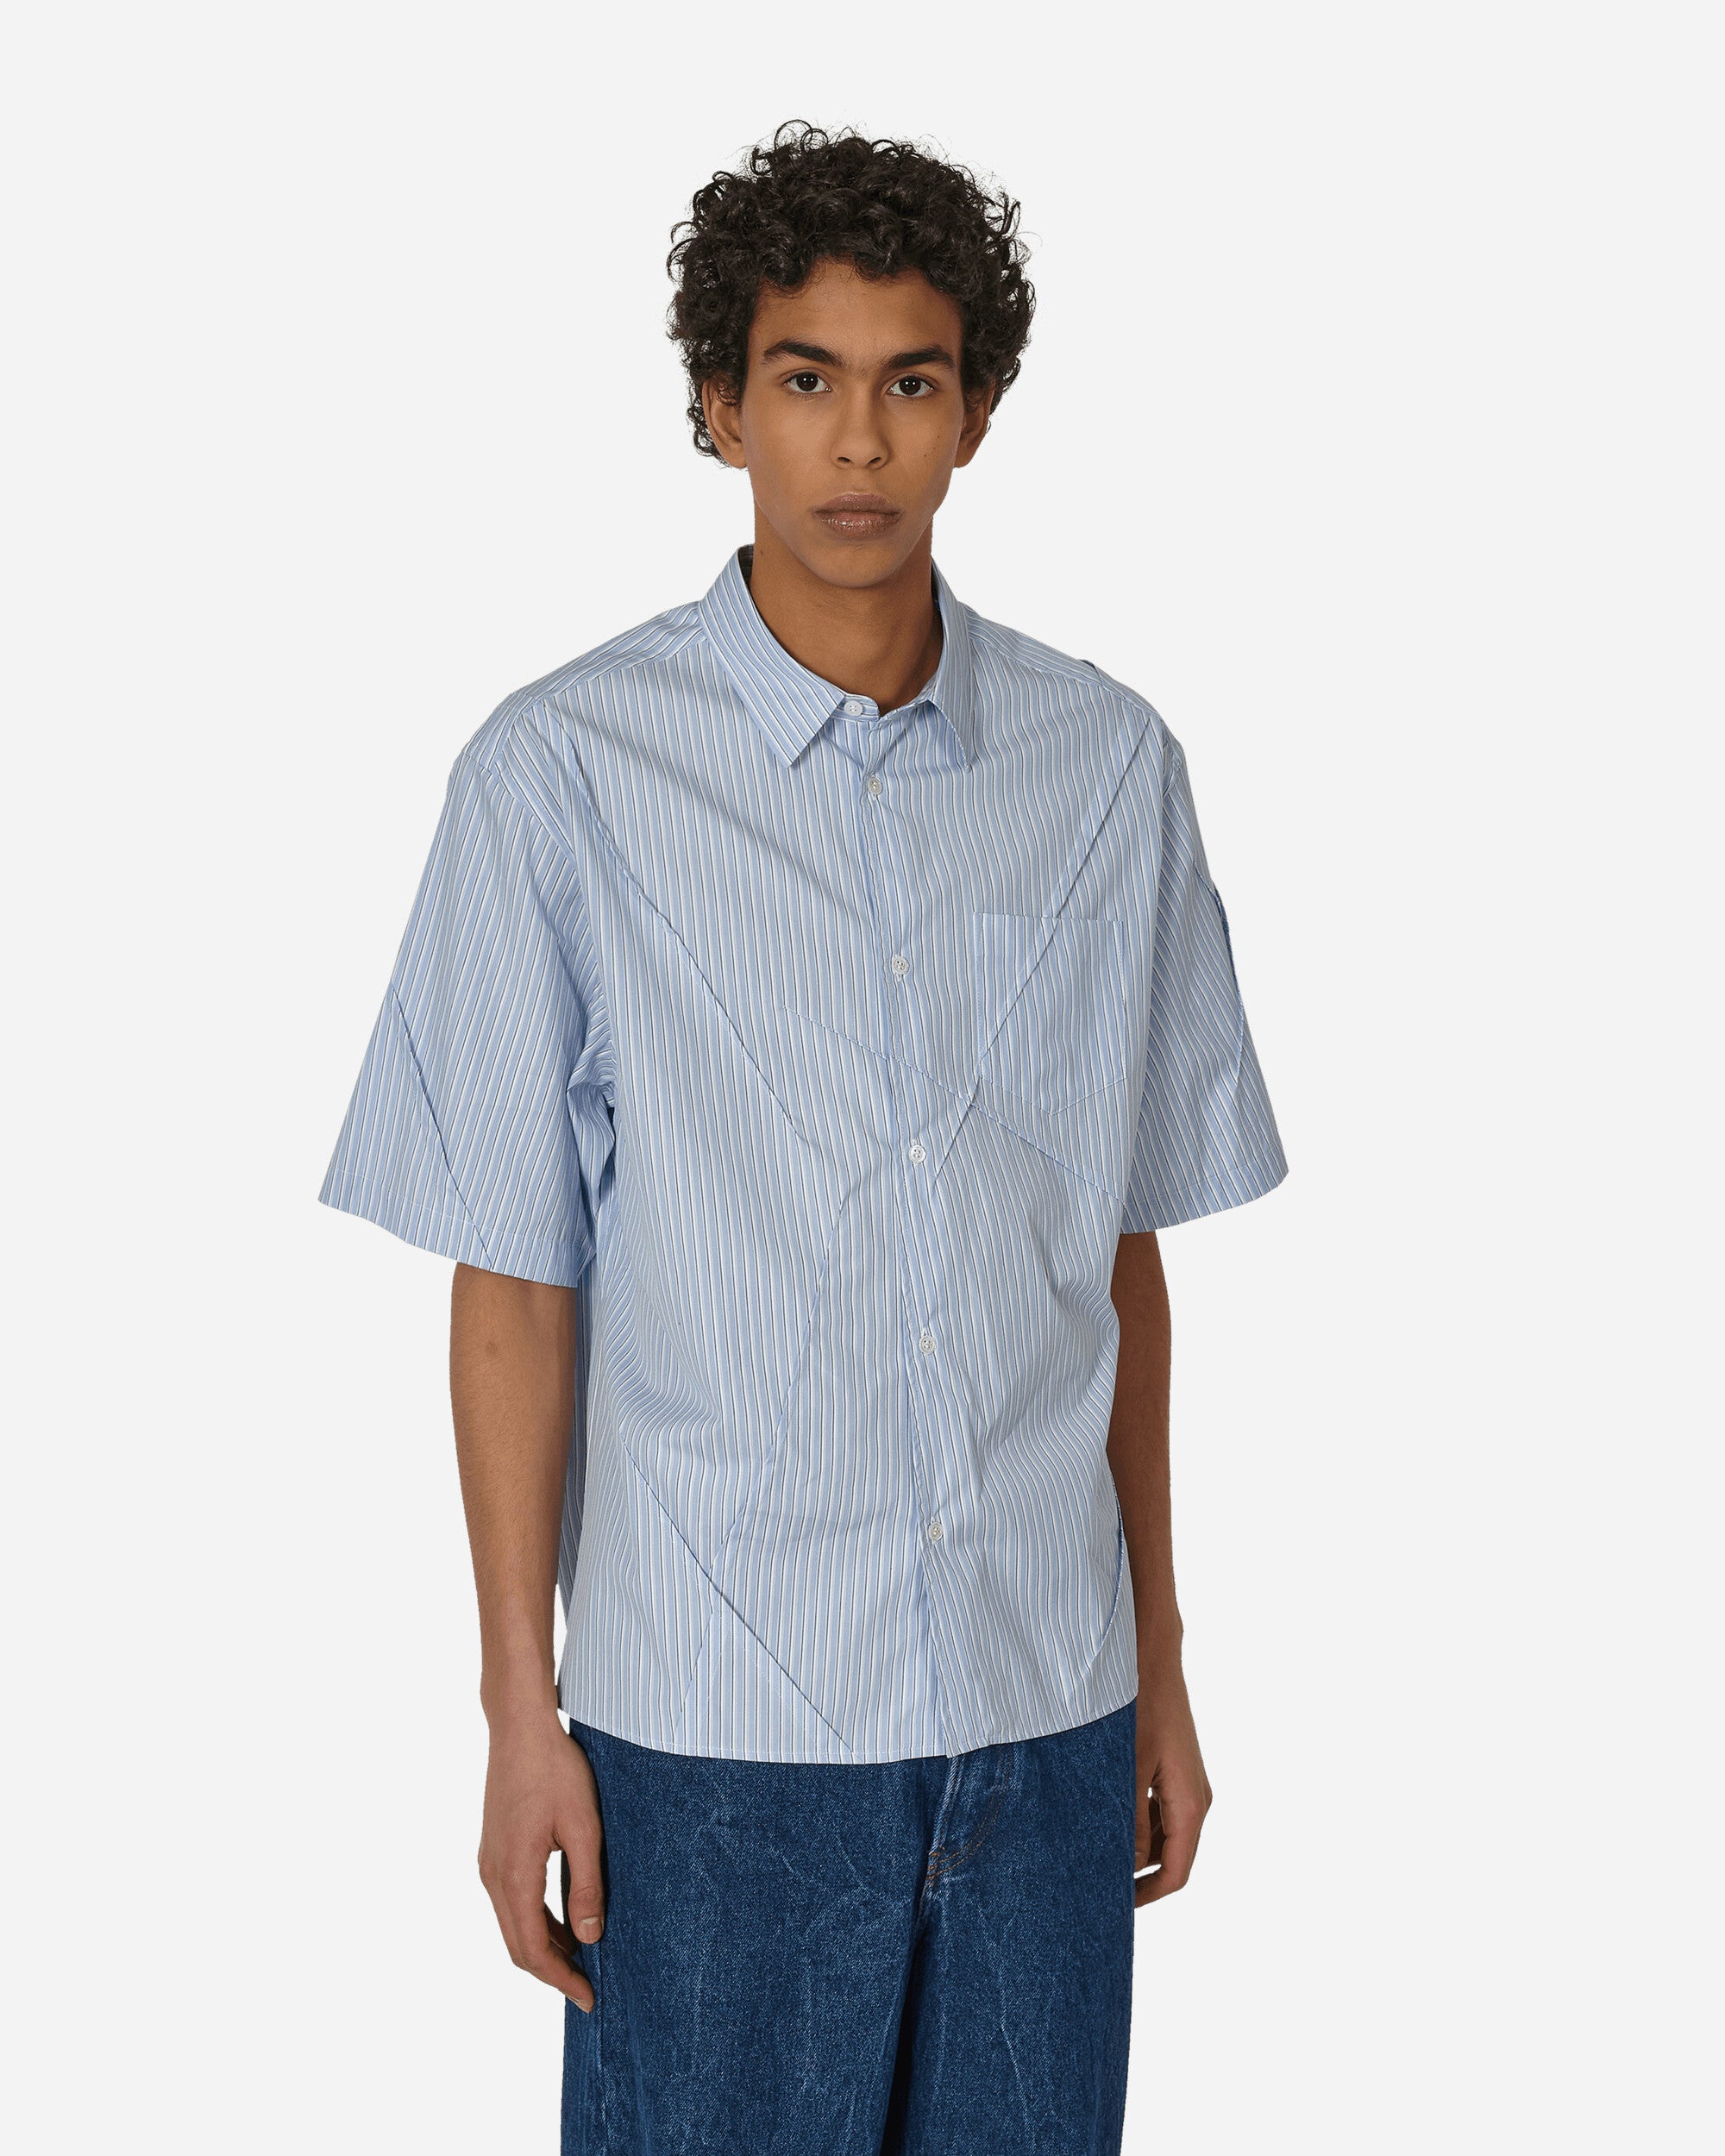 Undercover Short Sleeve Shirt Blue Stripes Shirts Shortsleeve Shirt UP1D4411-1 1